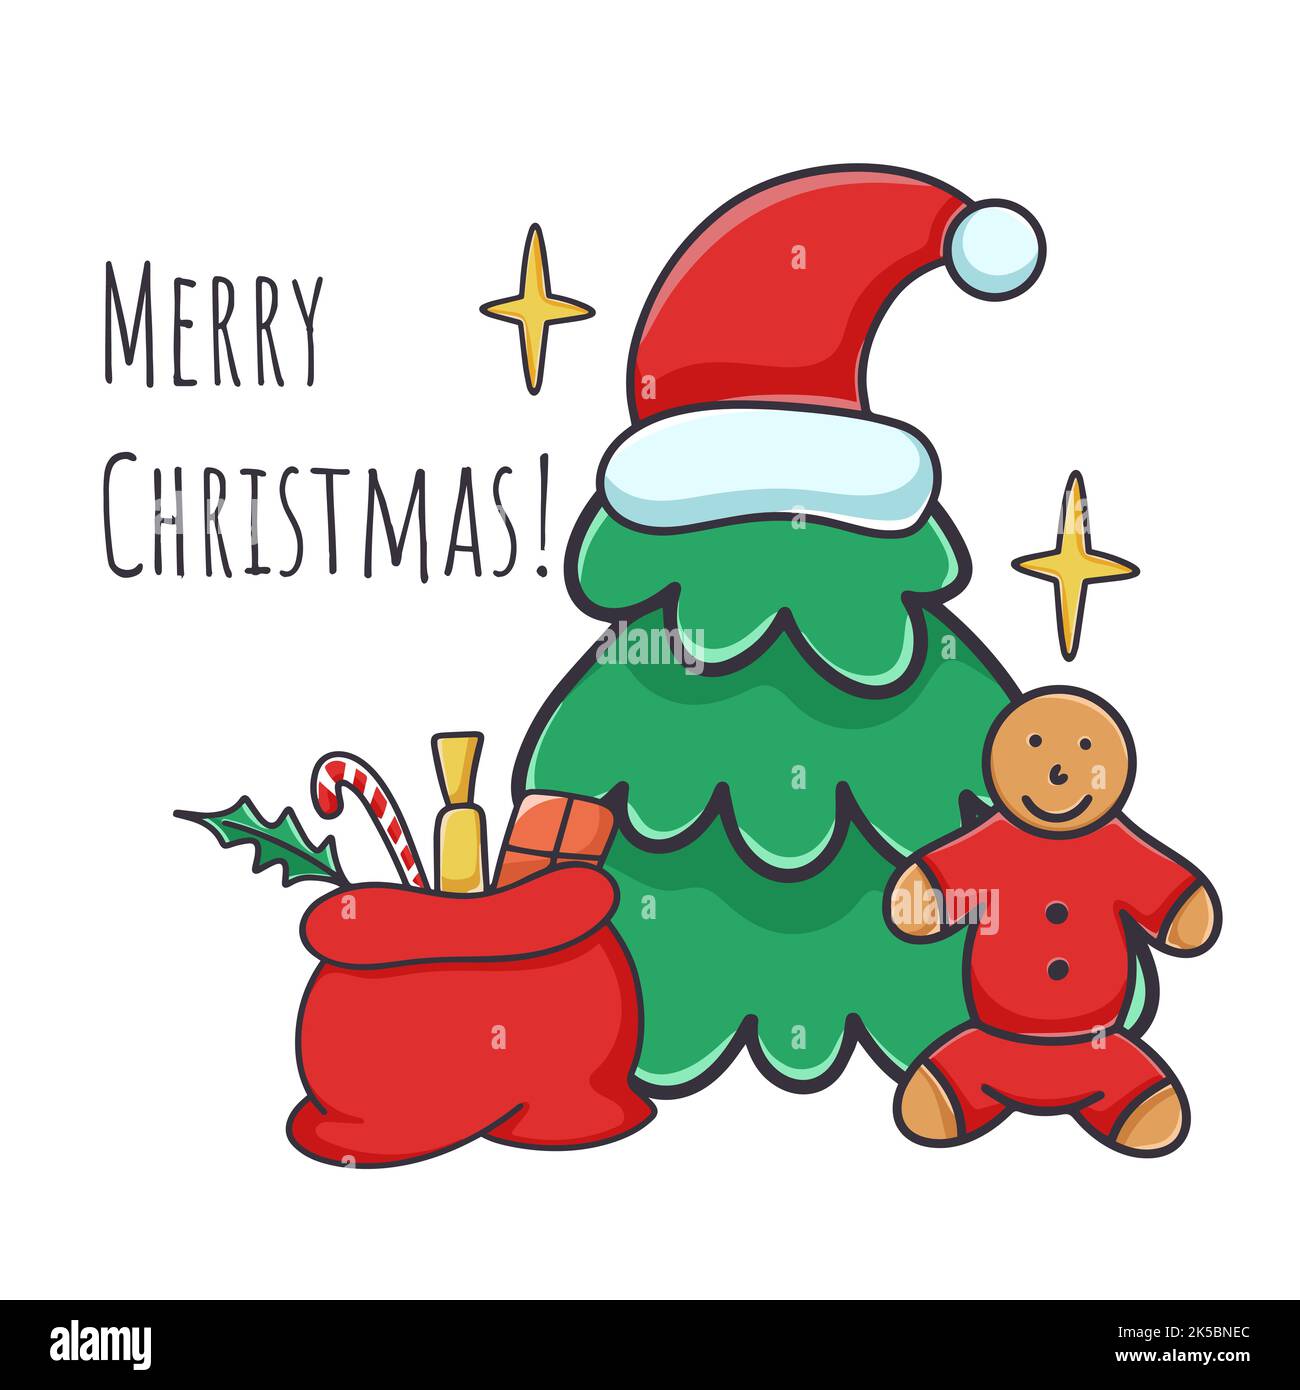 Frohe weihnachten Grußbanner mit Lebkuchenmann, weihnachtsbaum und Geschenken. Karte mit Aufschrift und Attributen des neuen Jahres und weihnachten Stock Vektor